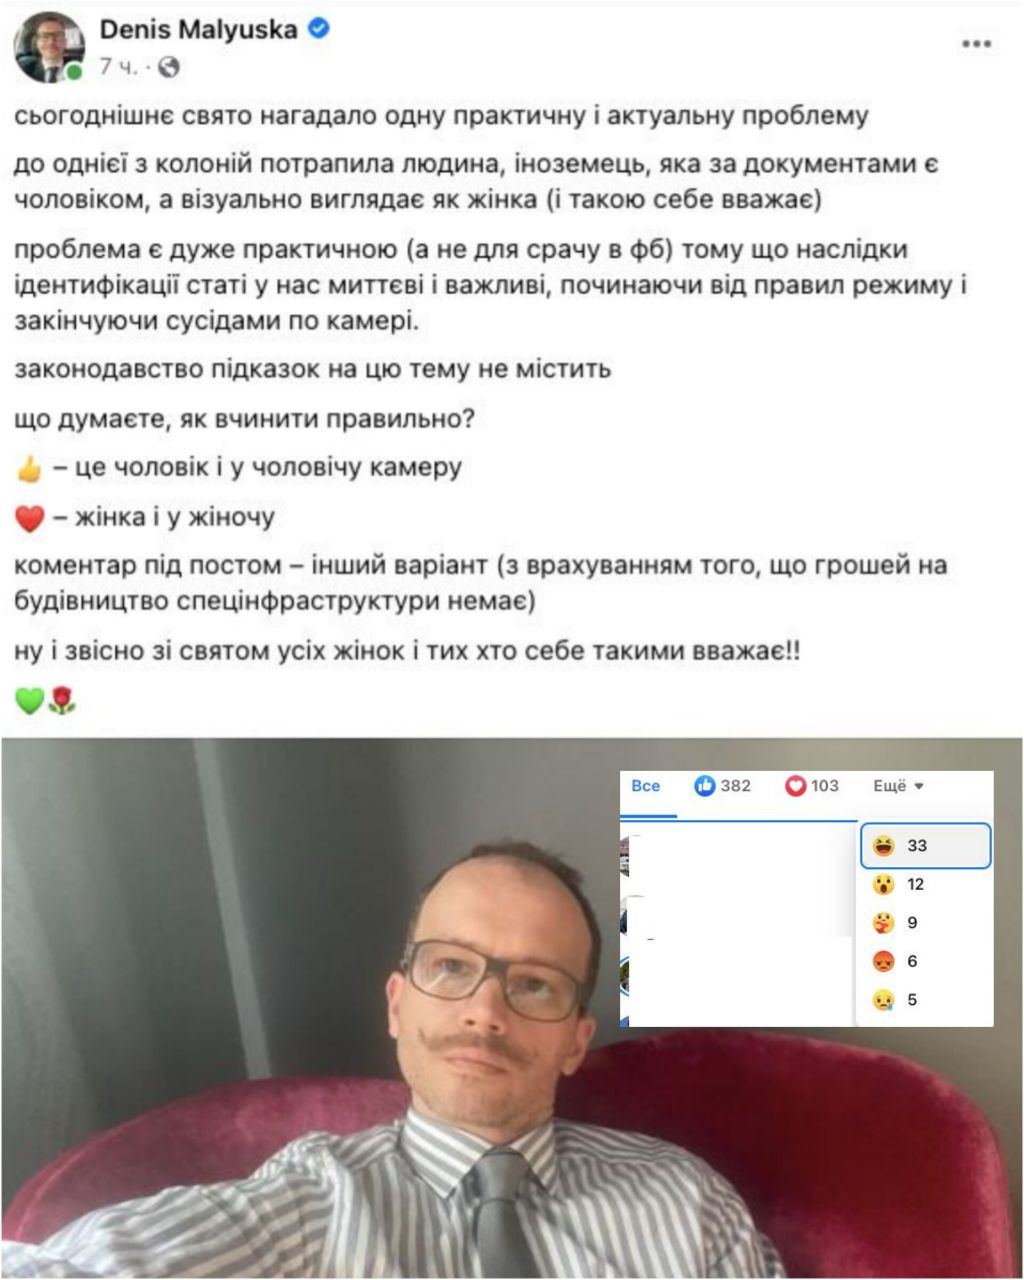 Дилемма от министра юстиции Малюськи: